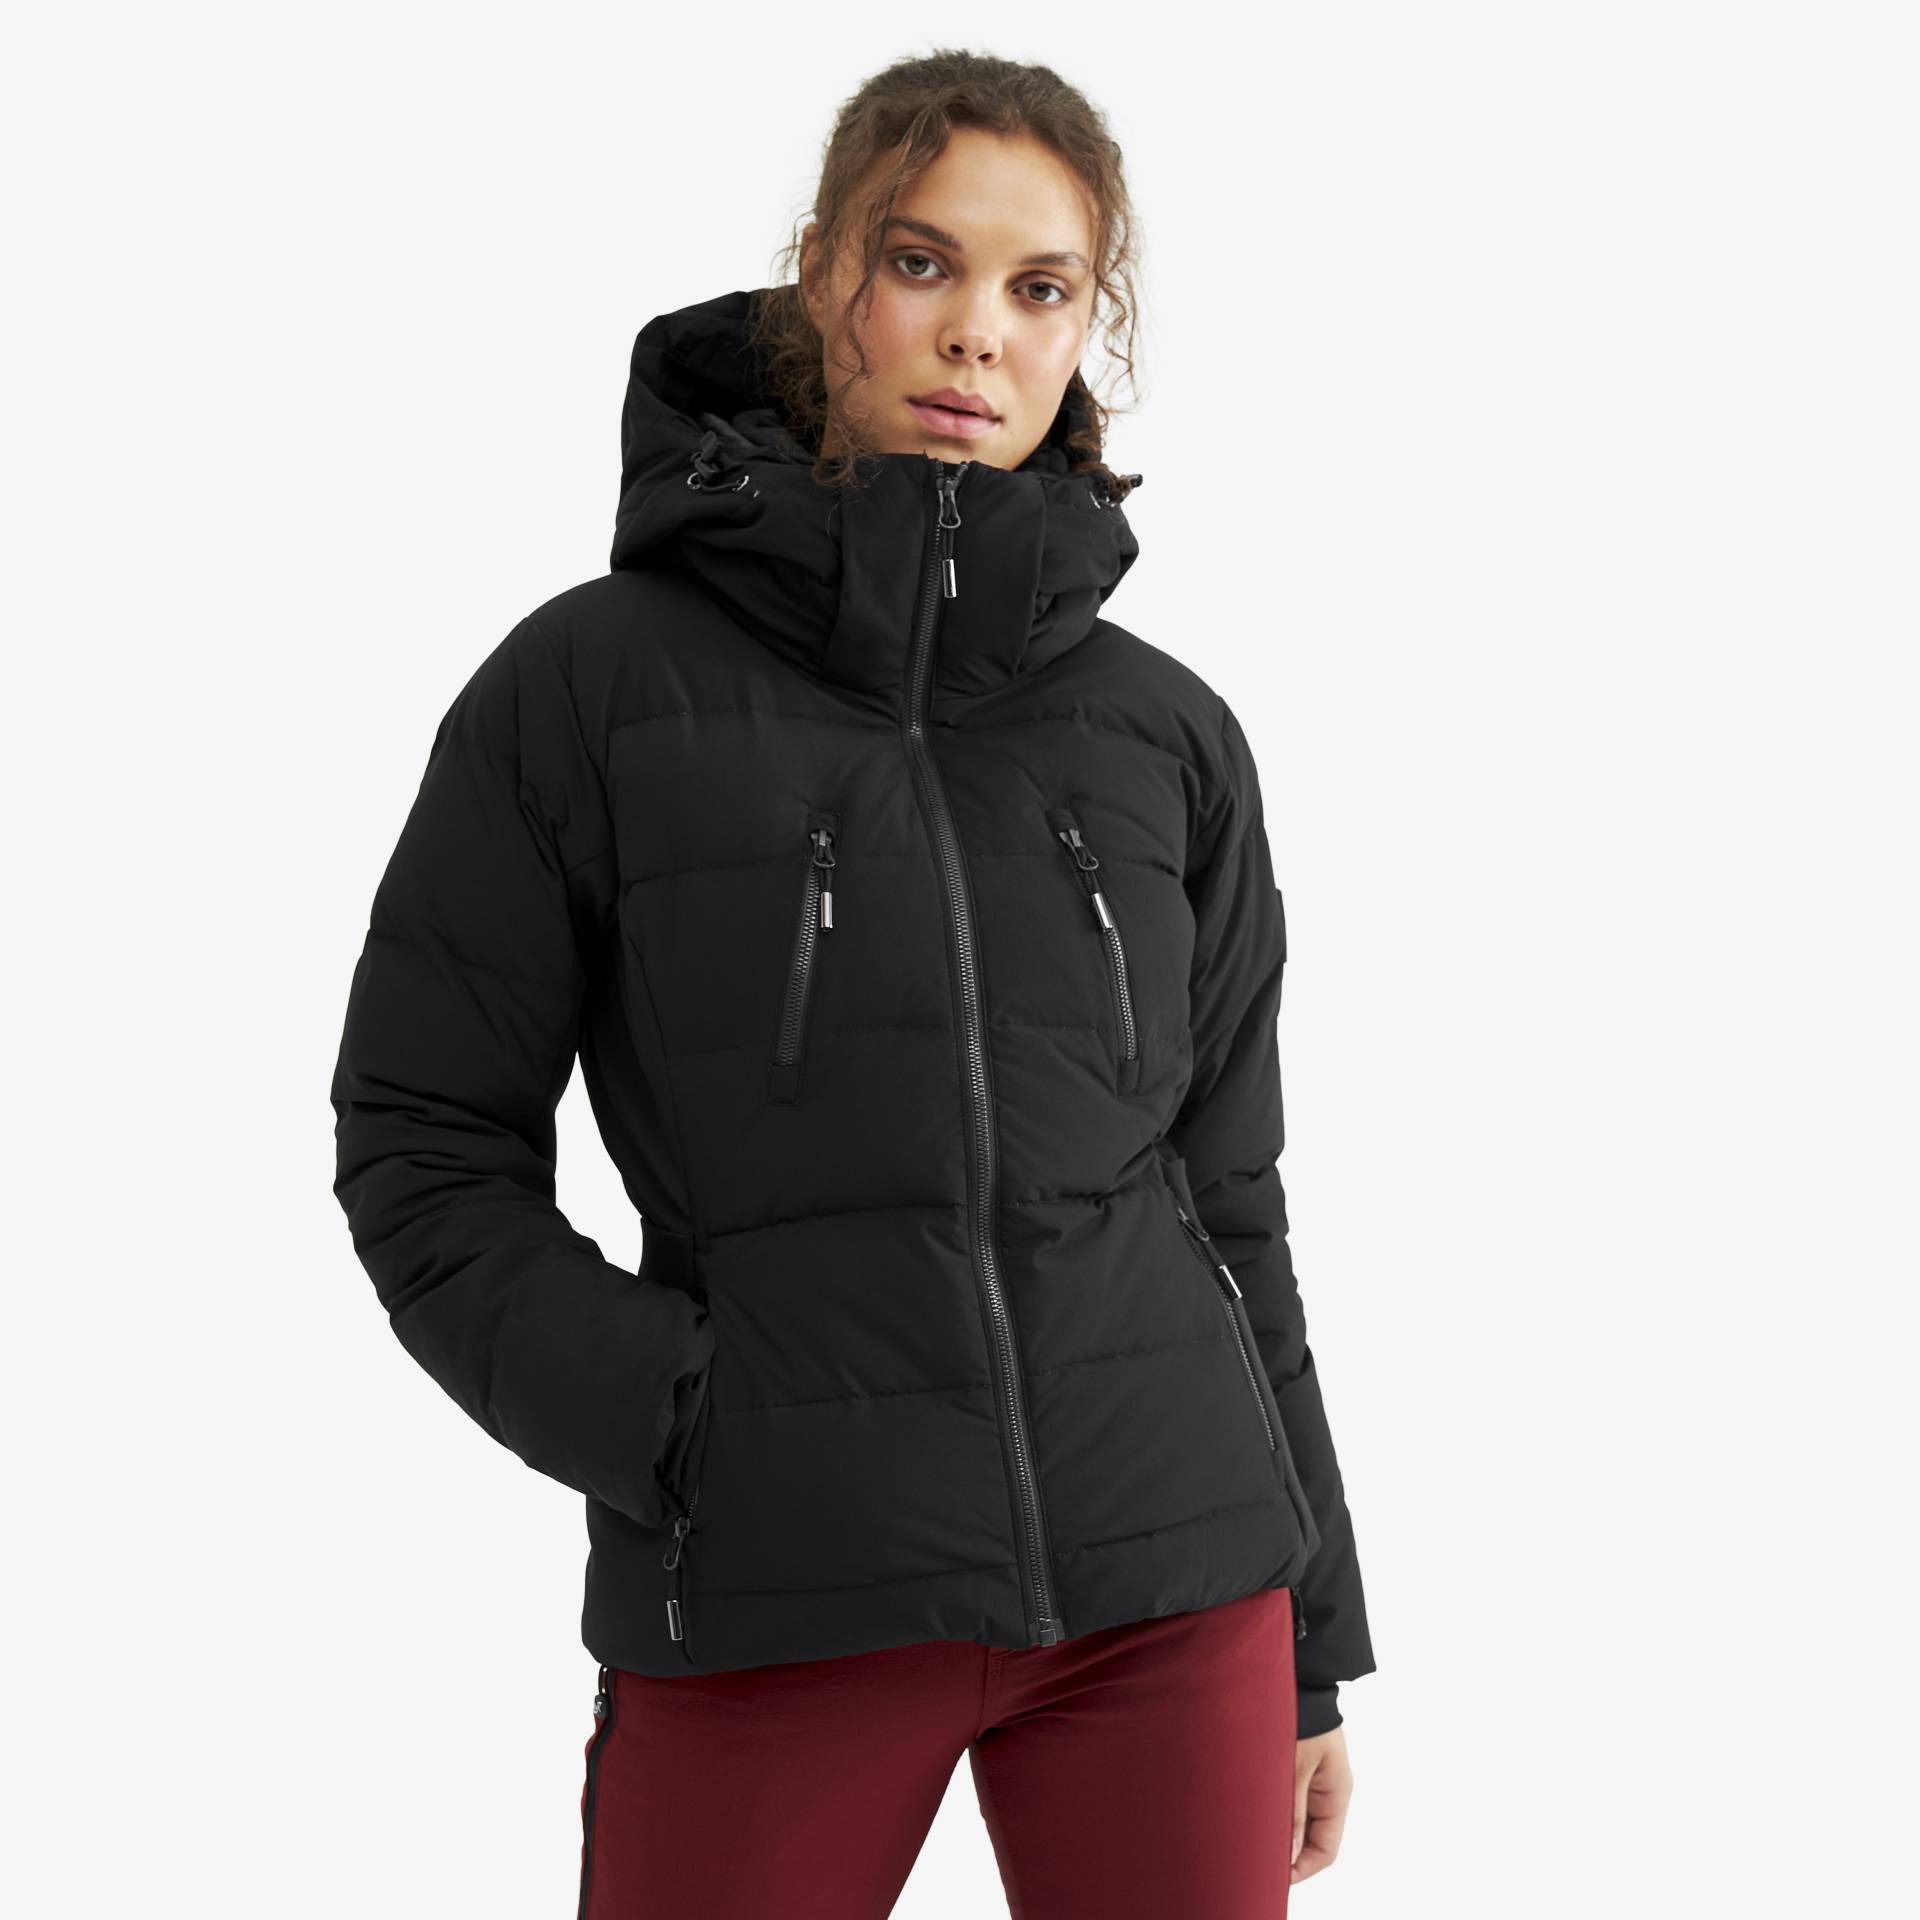 Igloo Jacket Damen Black, Größe:XL - Skijacken von RevolutionRace